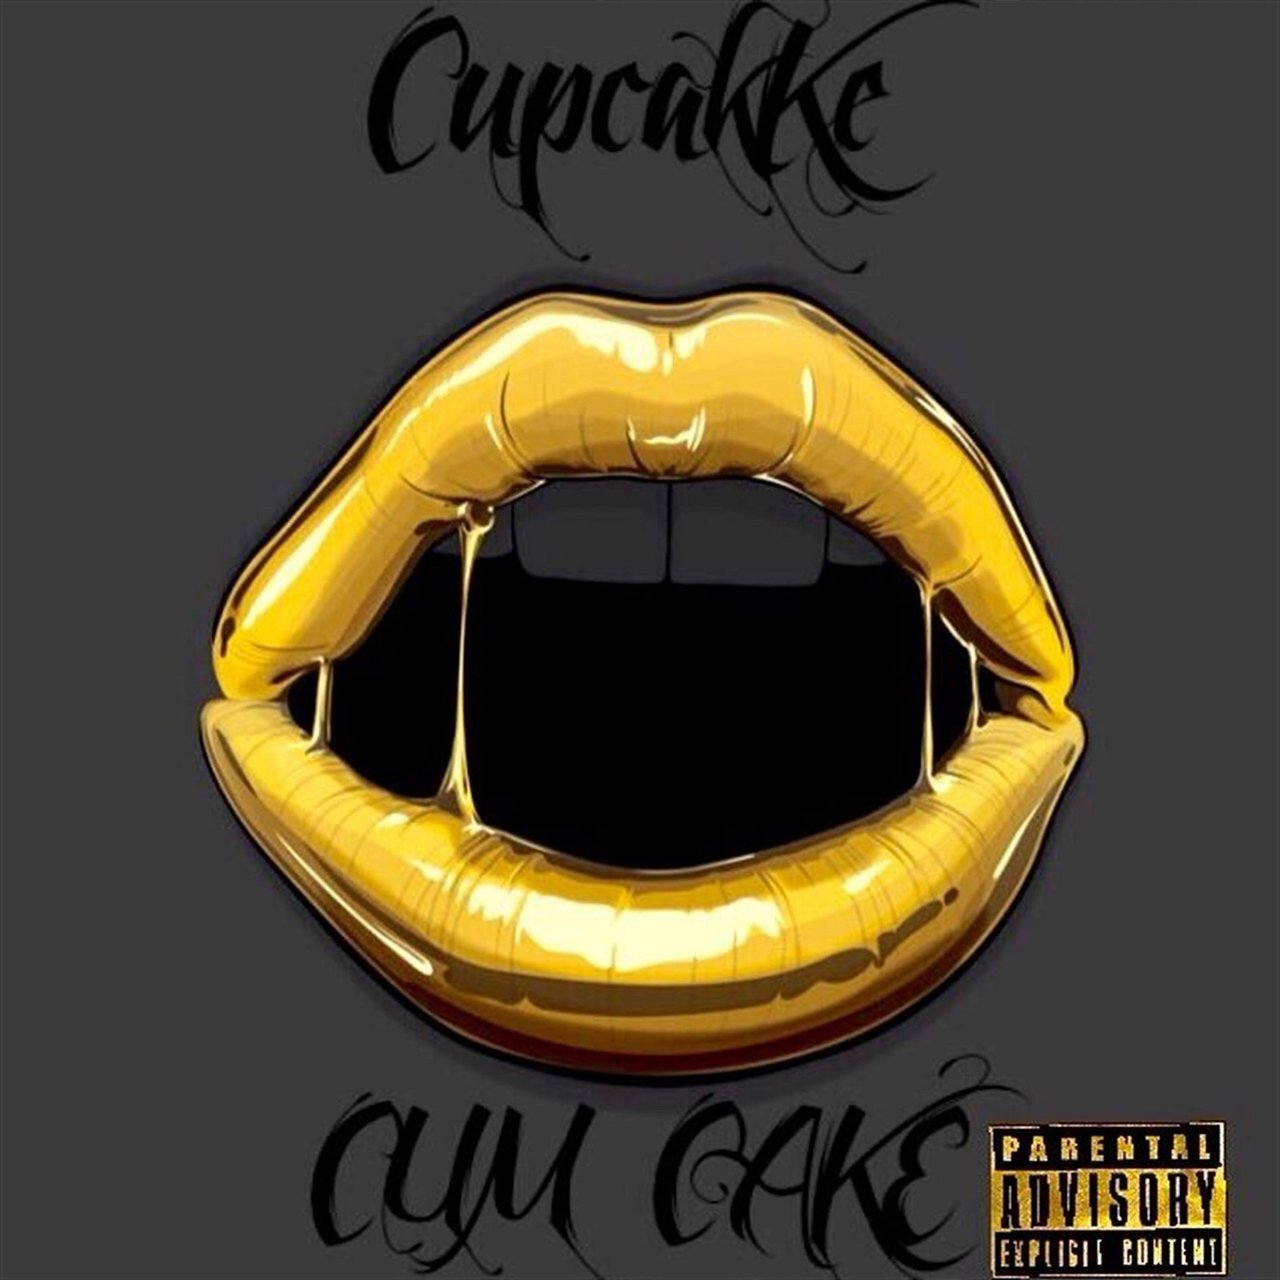 CupcakKe — Life cover artwork